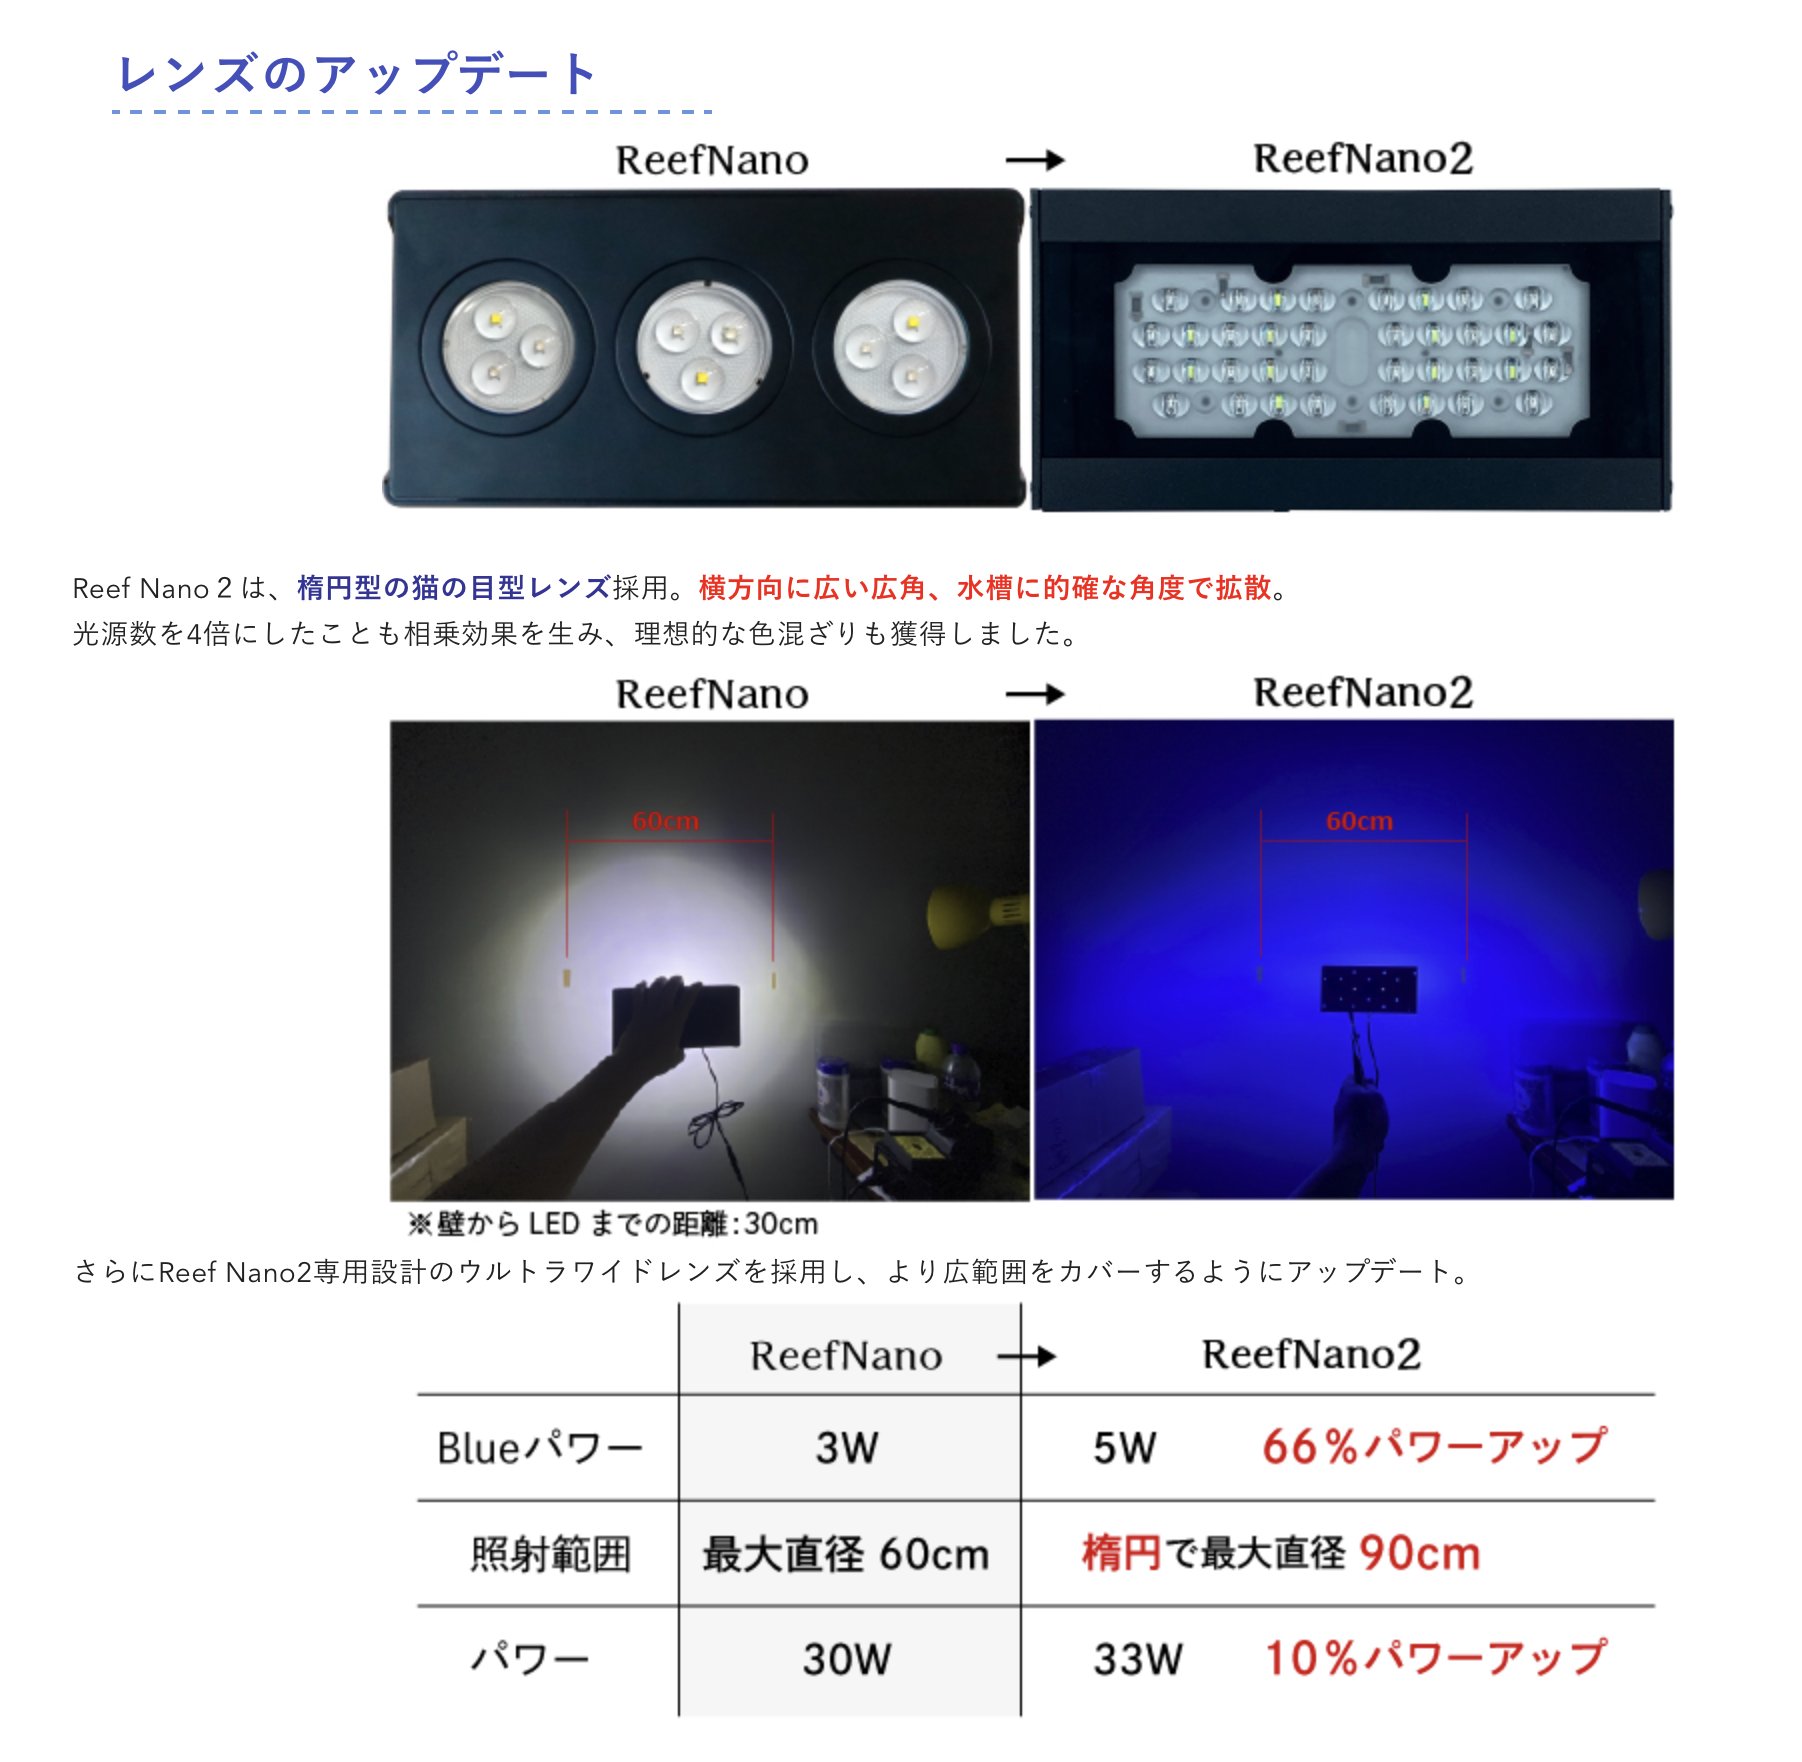 ◎ 水族之森 ◎ 日本 ZOOX OPTIMUS NANO REEF 2 LED 高效能海水夾燈 2代